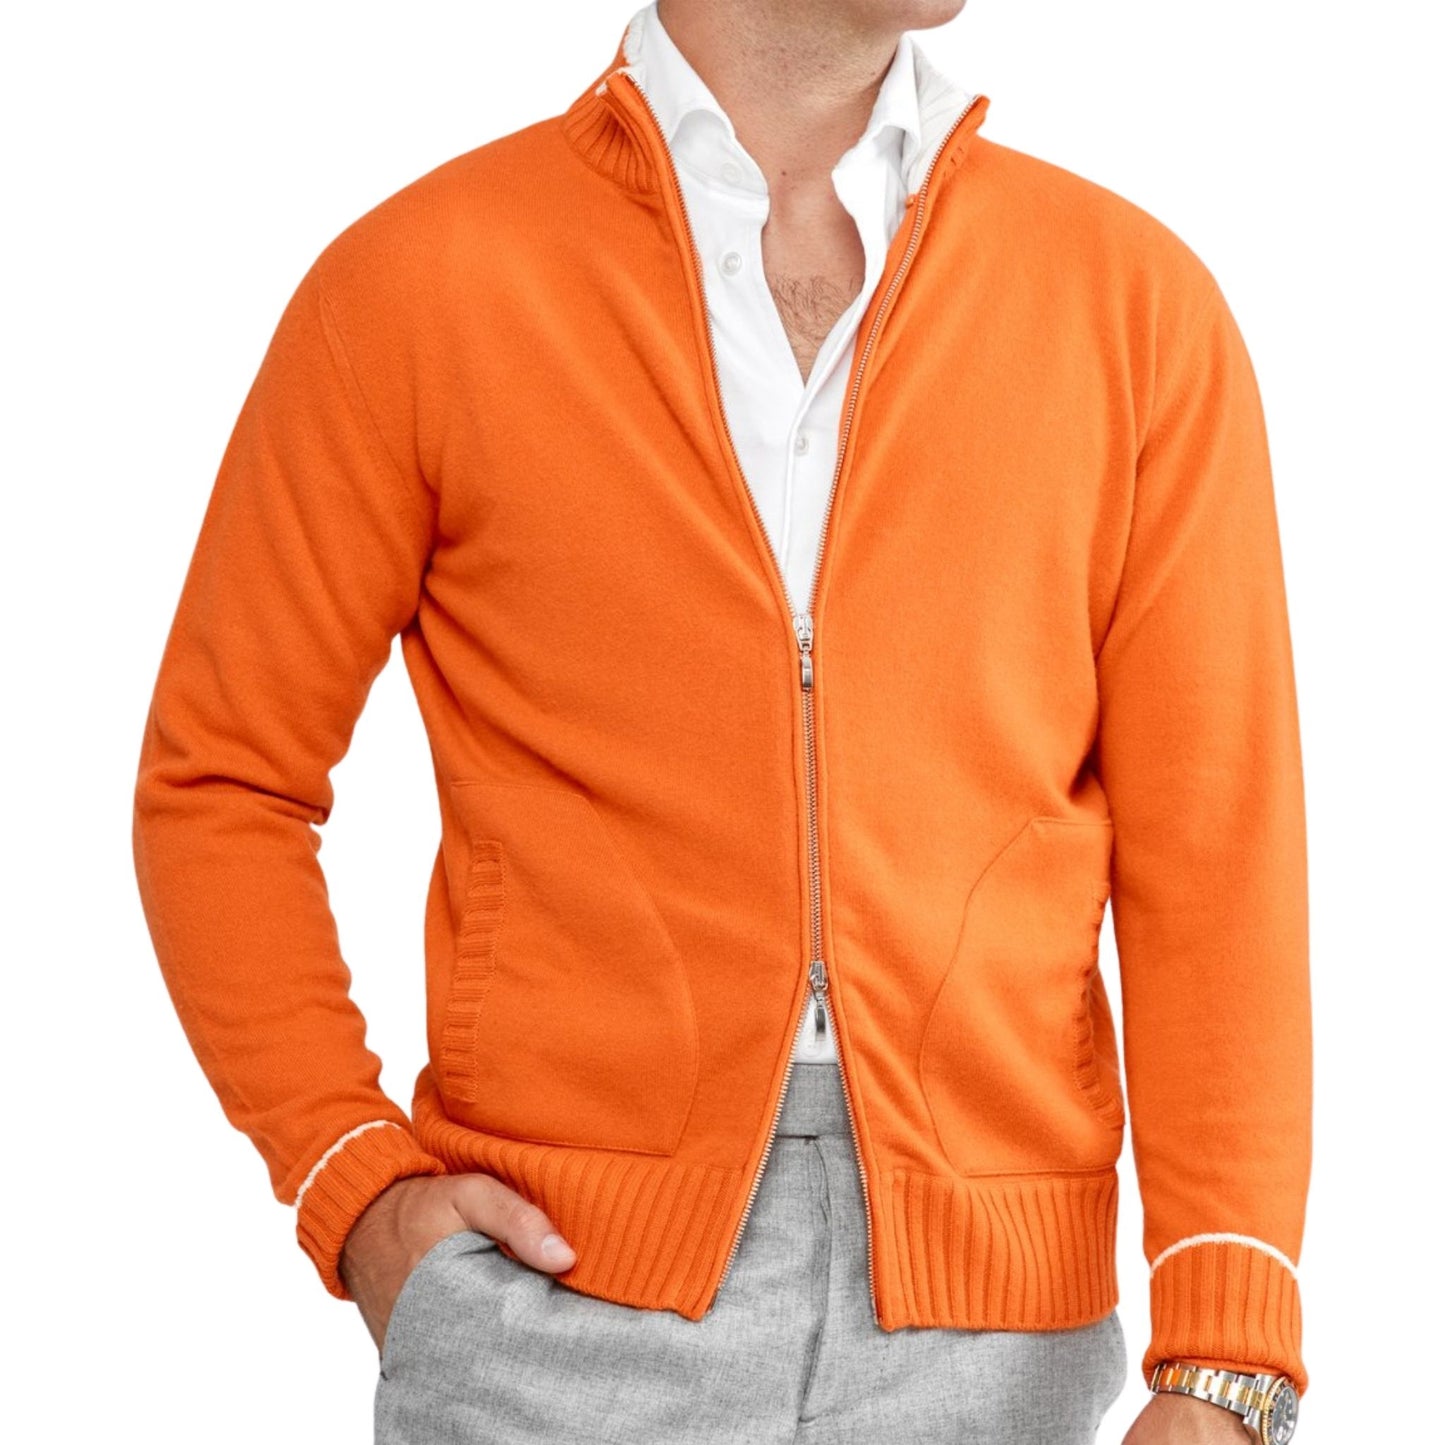 Full Zip Cashmere Cardigan Sweater in Orange